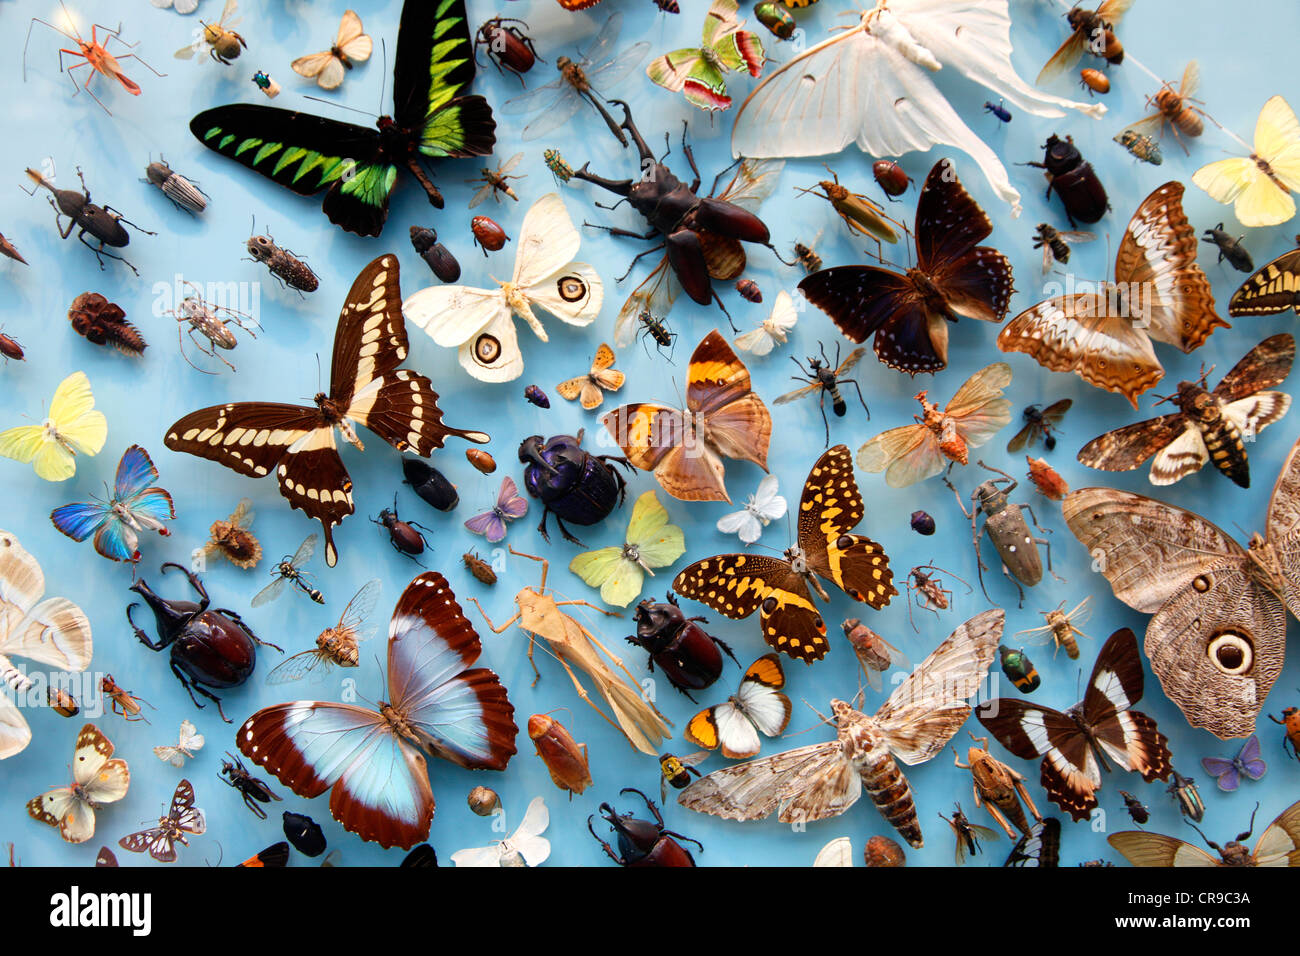 Sammlung von Insekten, Schmetterlinge, Schmetterlinge, Käfer aus rund um die Welt, die University Museum of Natural History, Oxford Stockfoto